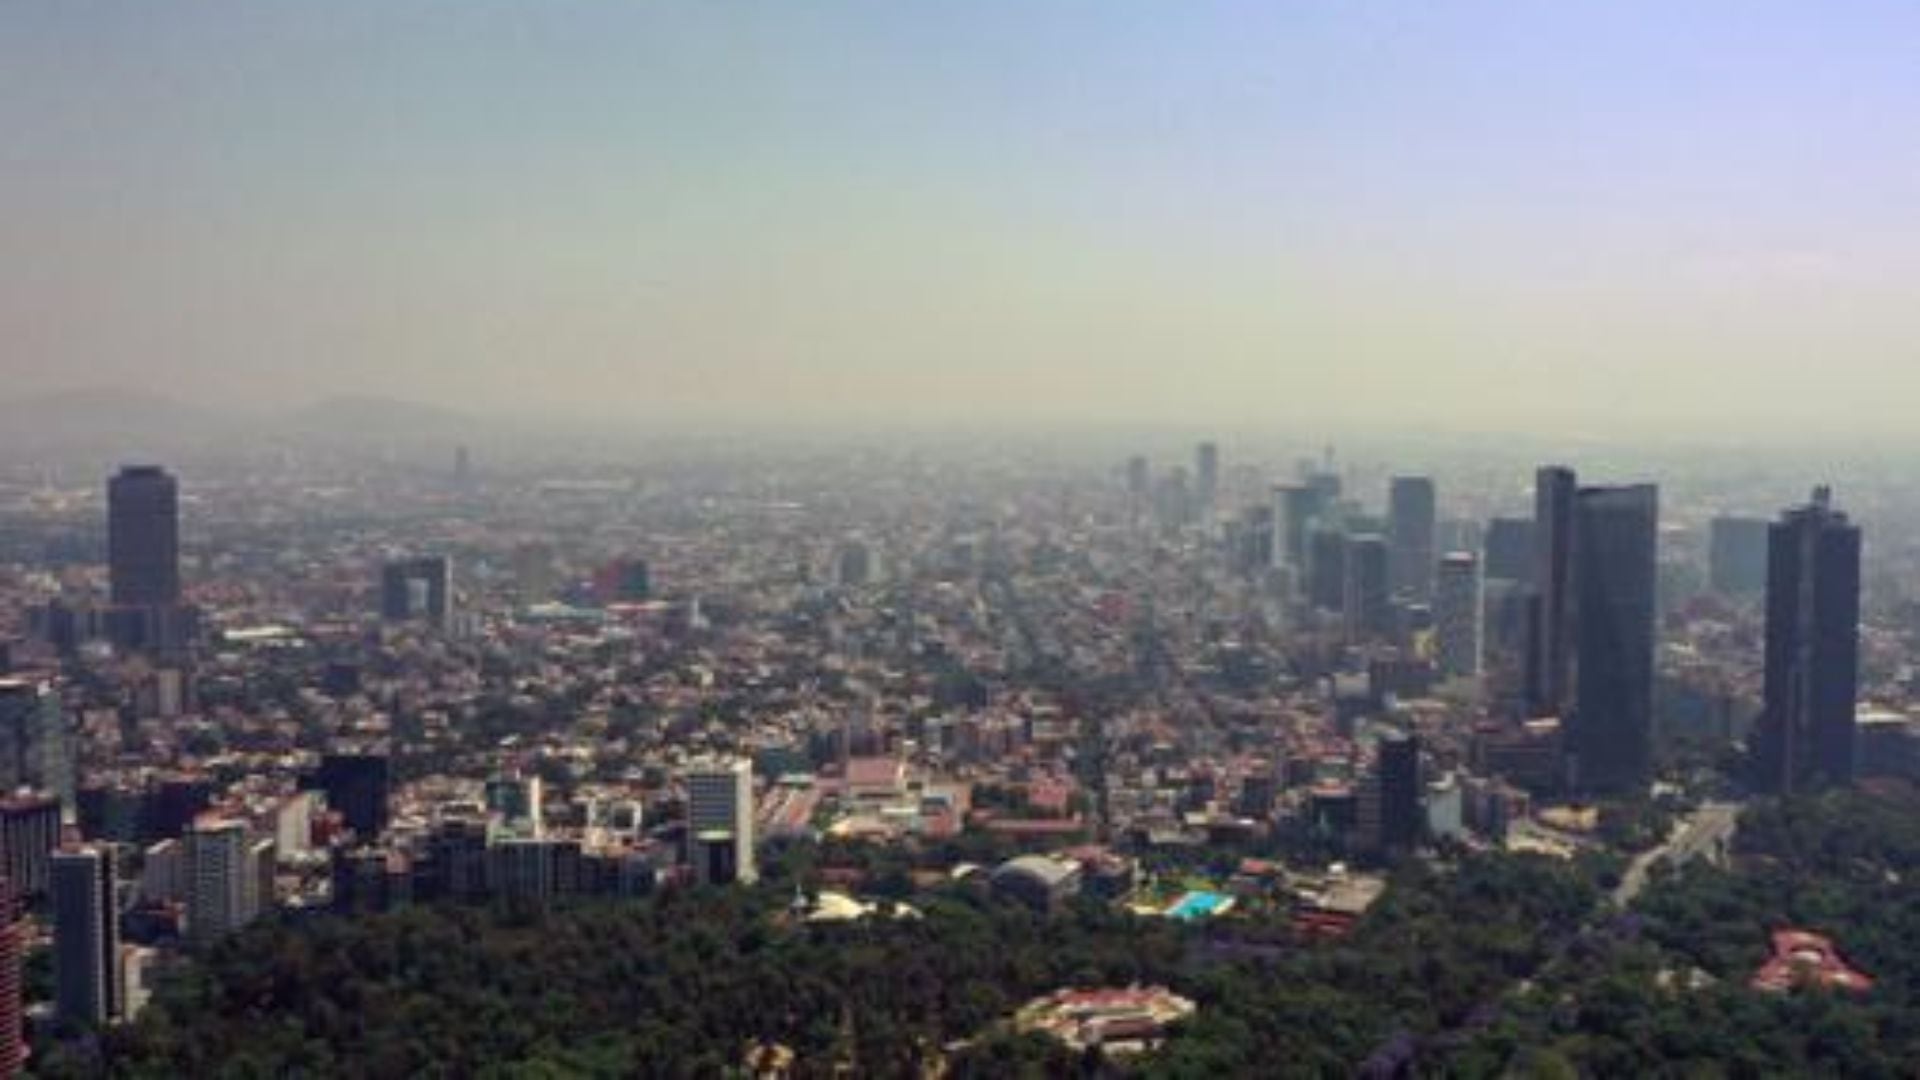 La región sureste de la Ciudad de México se mantiene en contingencia ambiental (ALFREDO ESTRELLA / AFP)